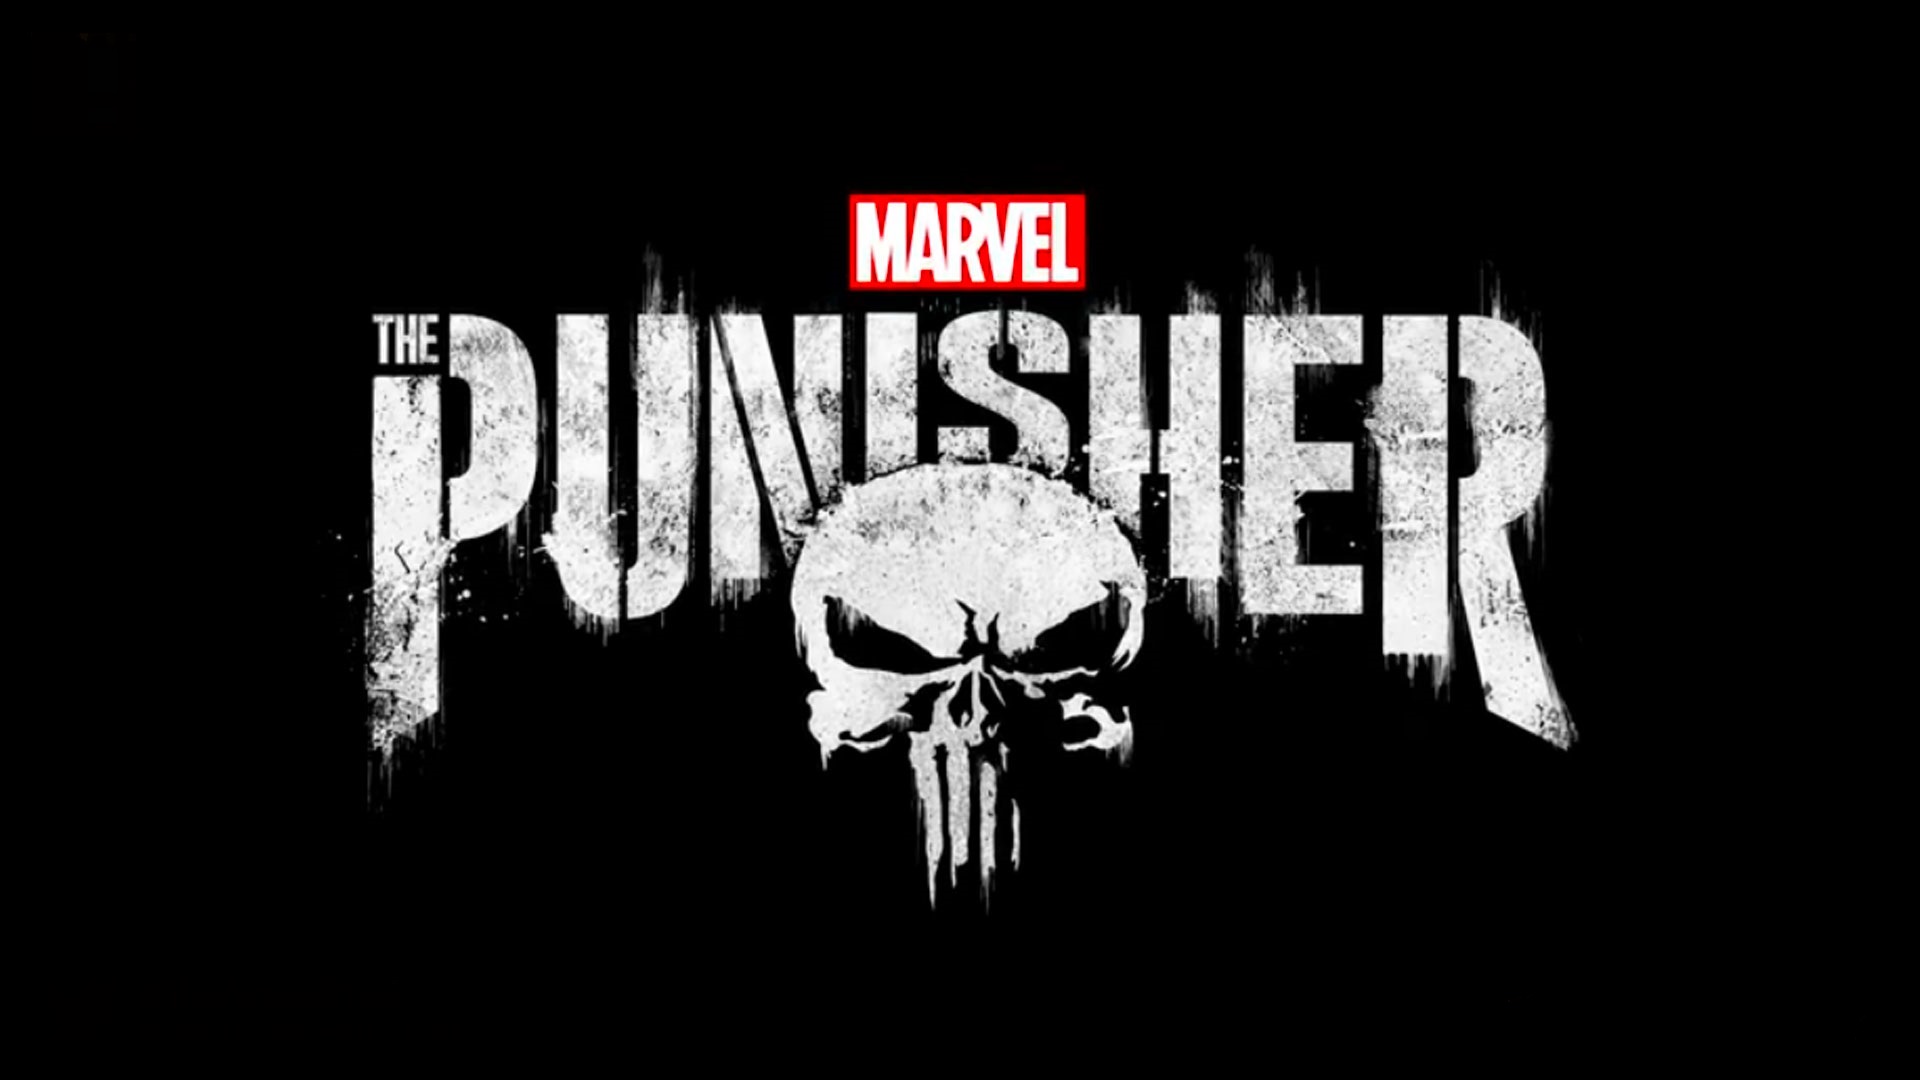 Critique de The Punisher saison 1 – La guerre selon Frank Castle